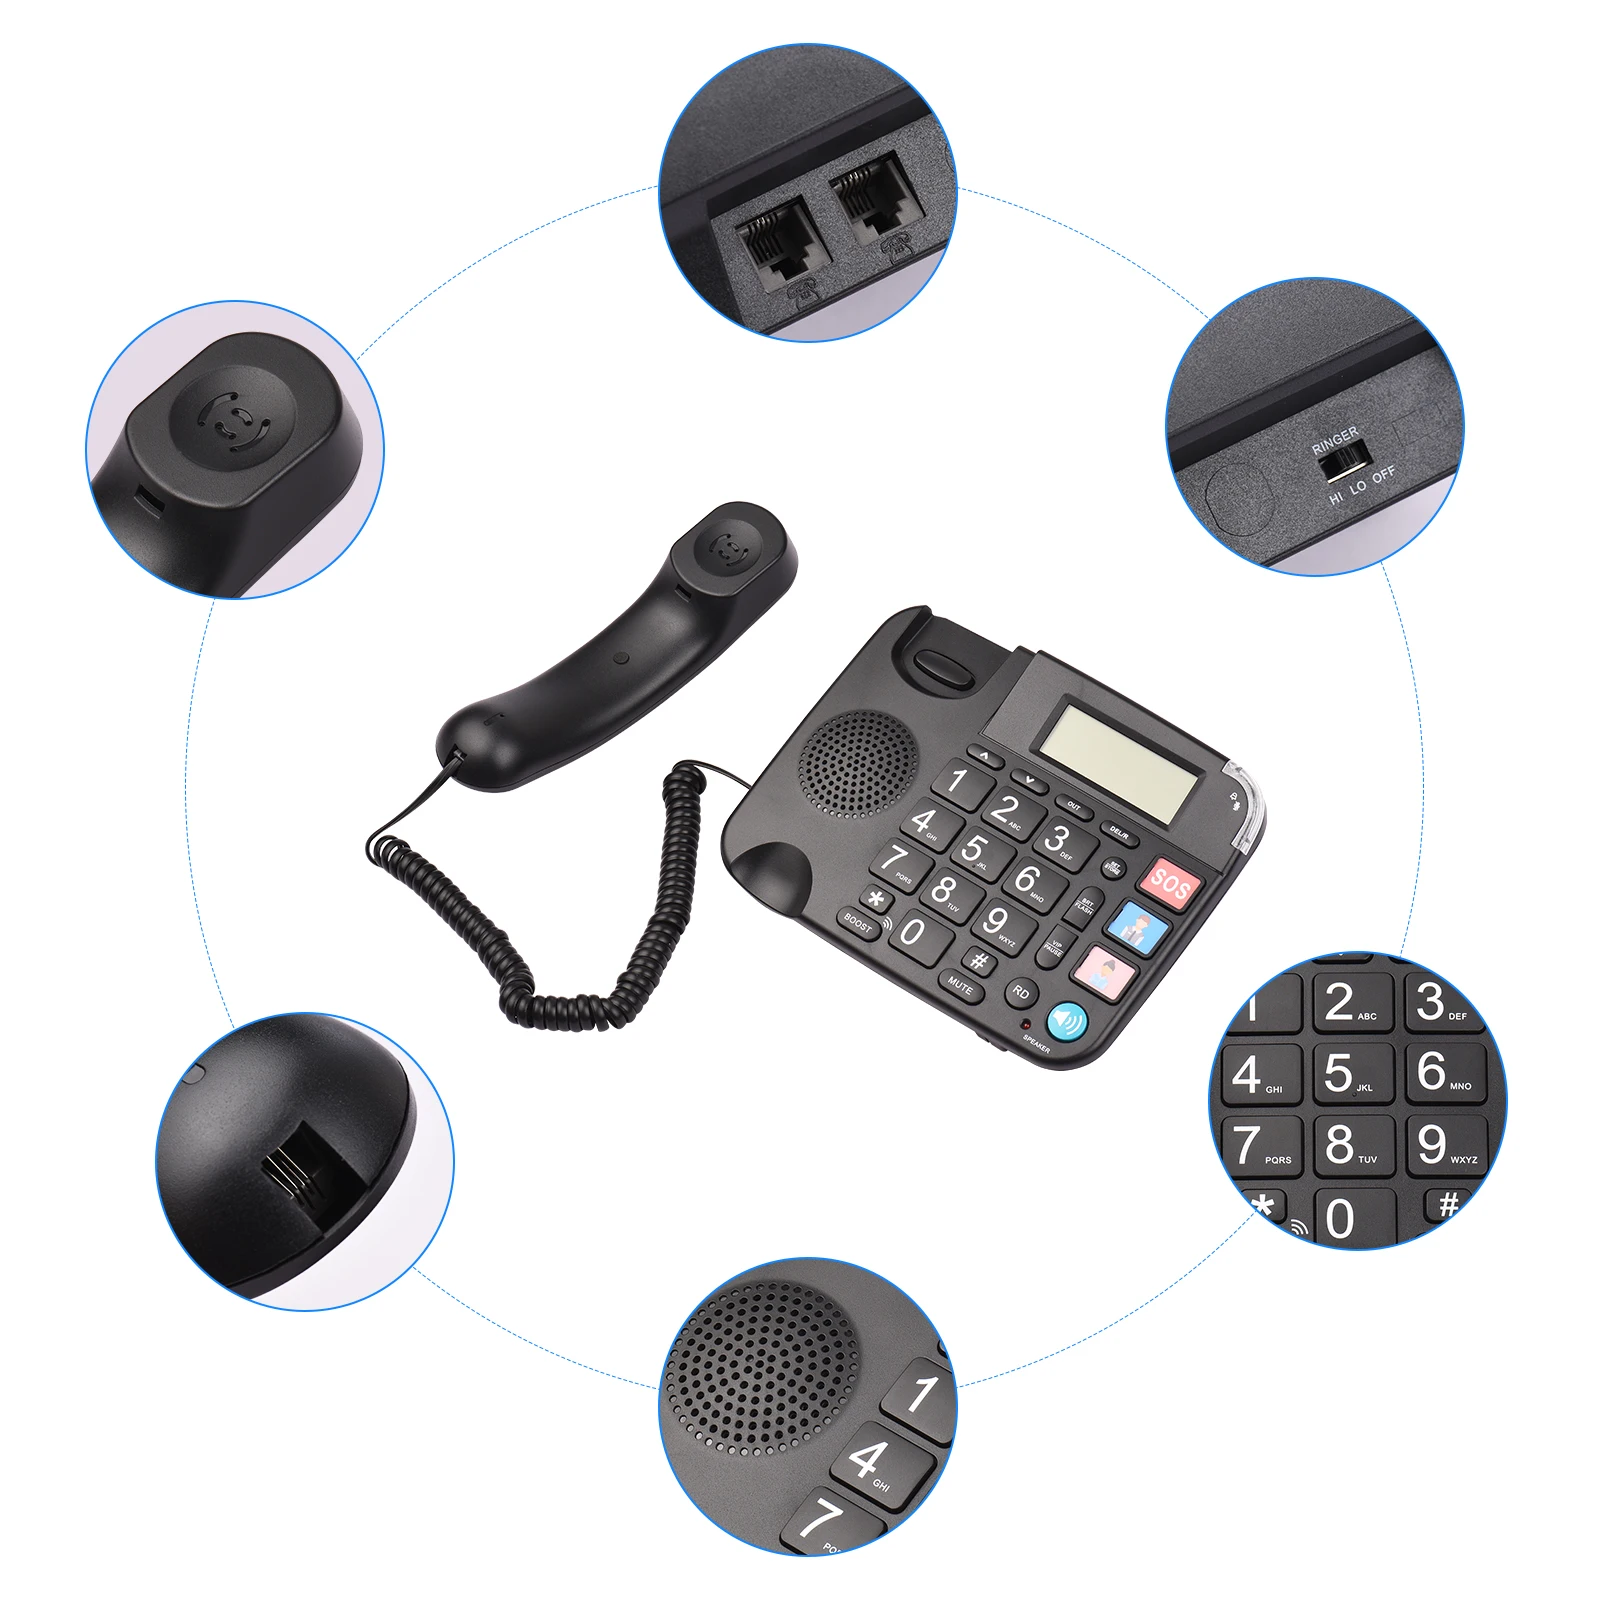 Accessoires Zwart Corded Telefoon met grote knop bureau vaste telefoon Telefoon Ondersteuning Handsfree/redial/flash/speed Dial/ring volumeregeling